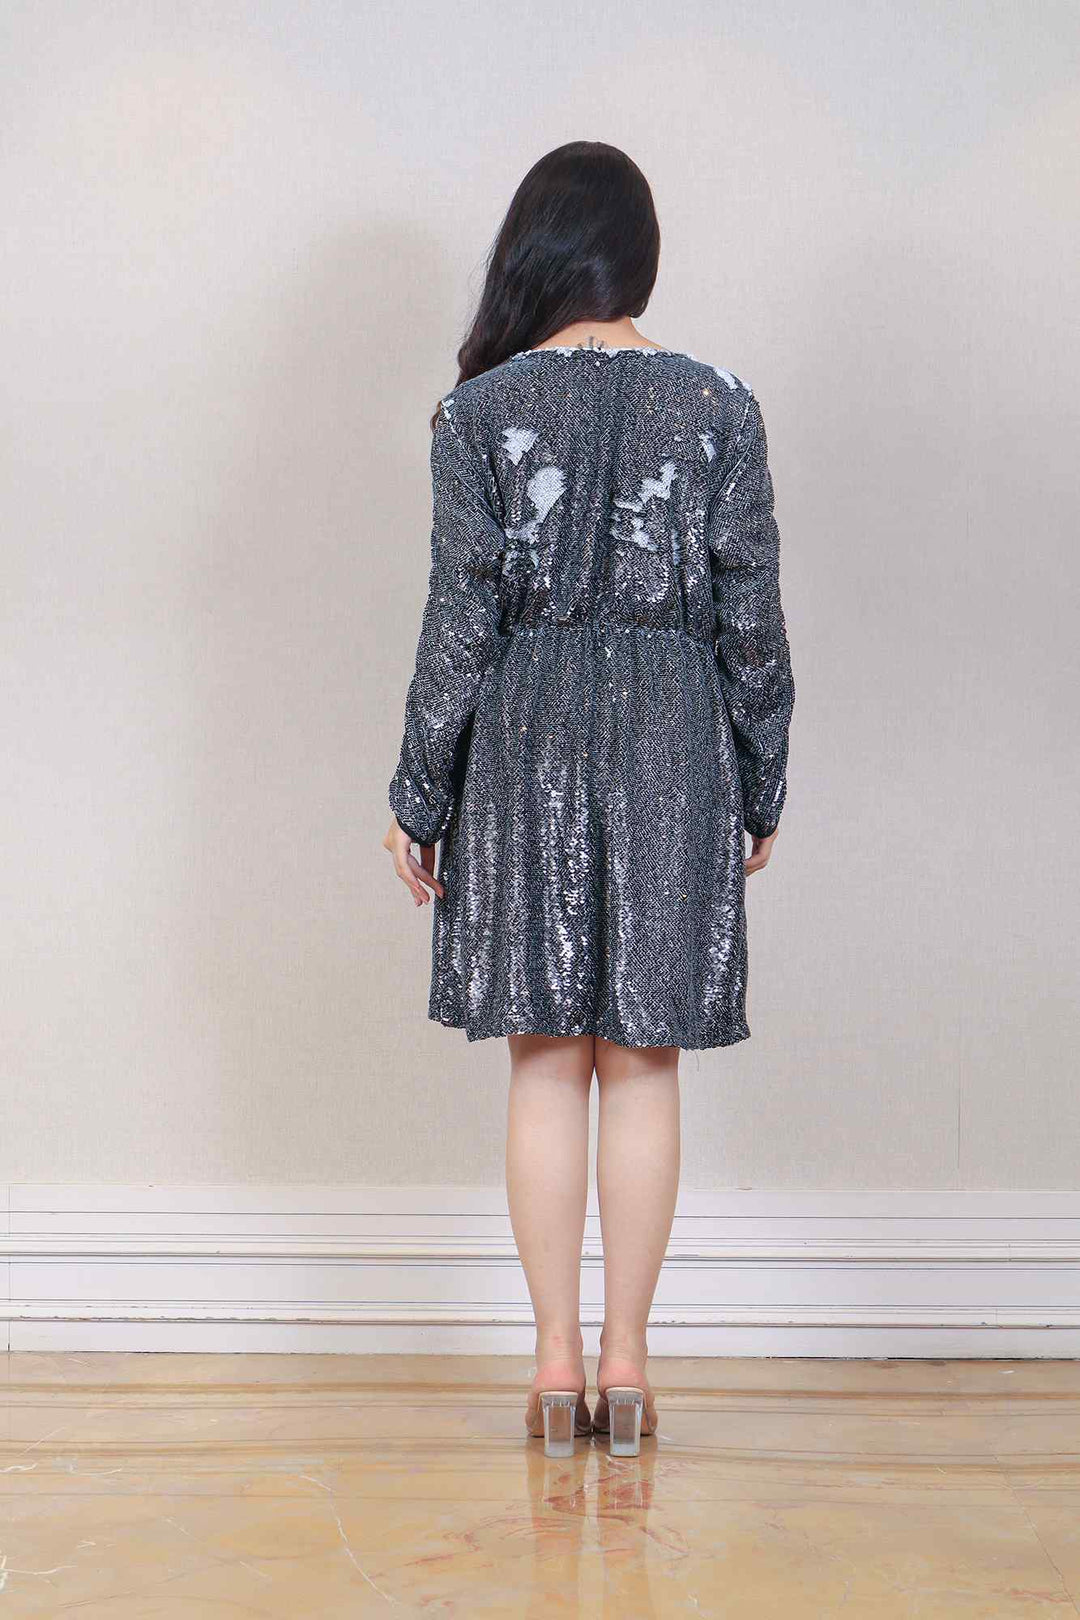 Designer Charcoal Grey Color Dress